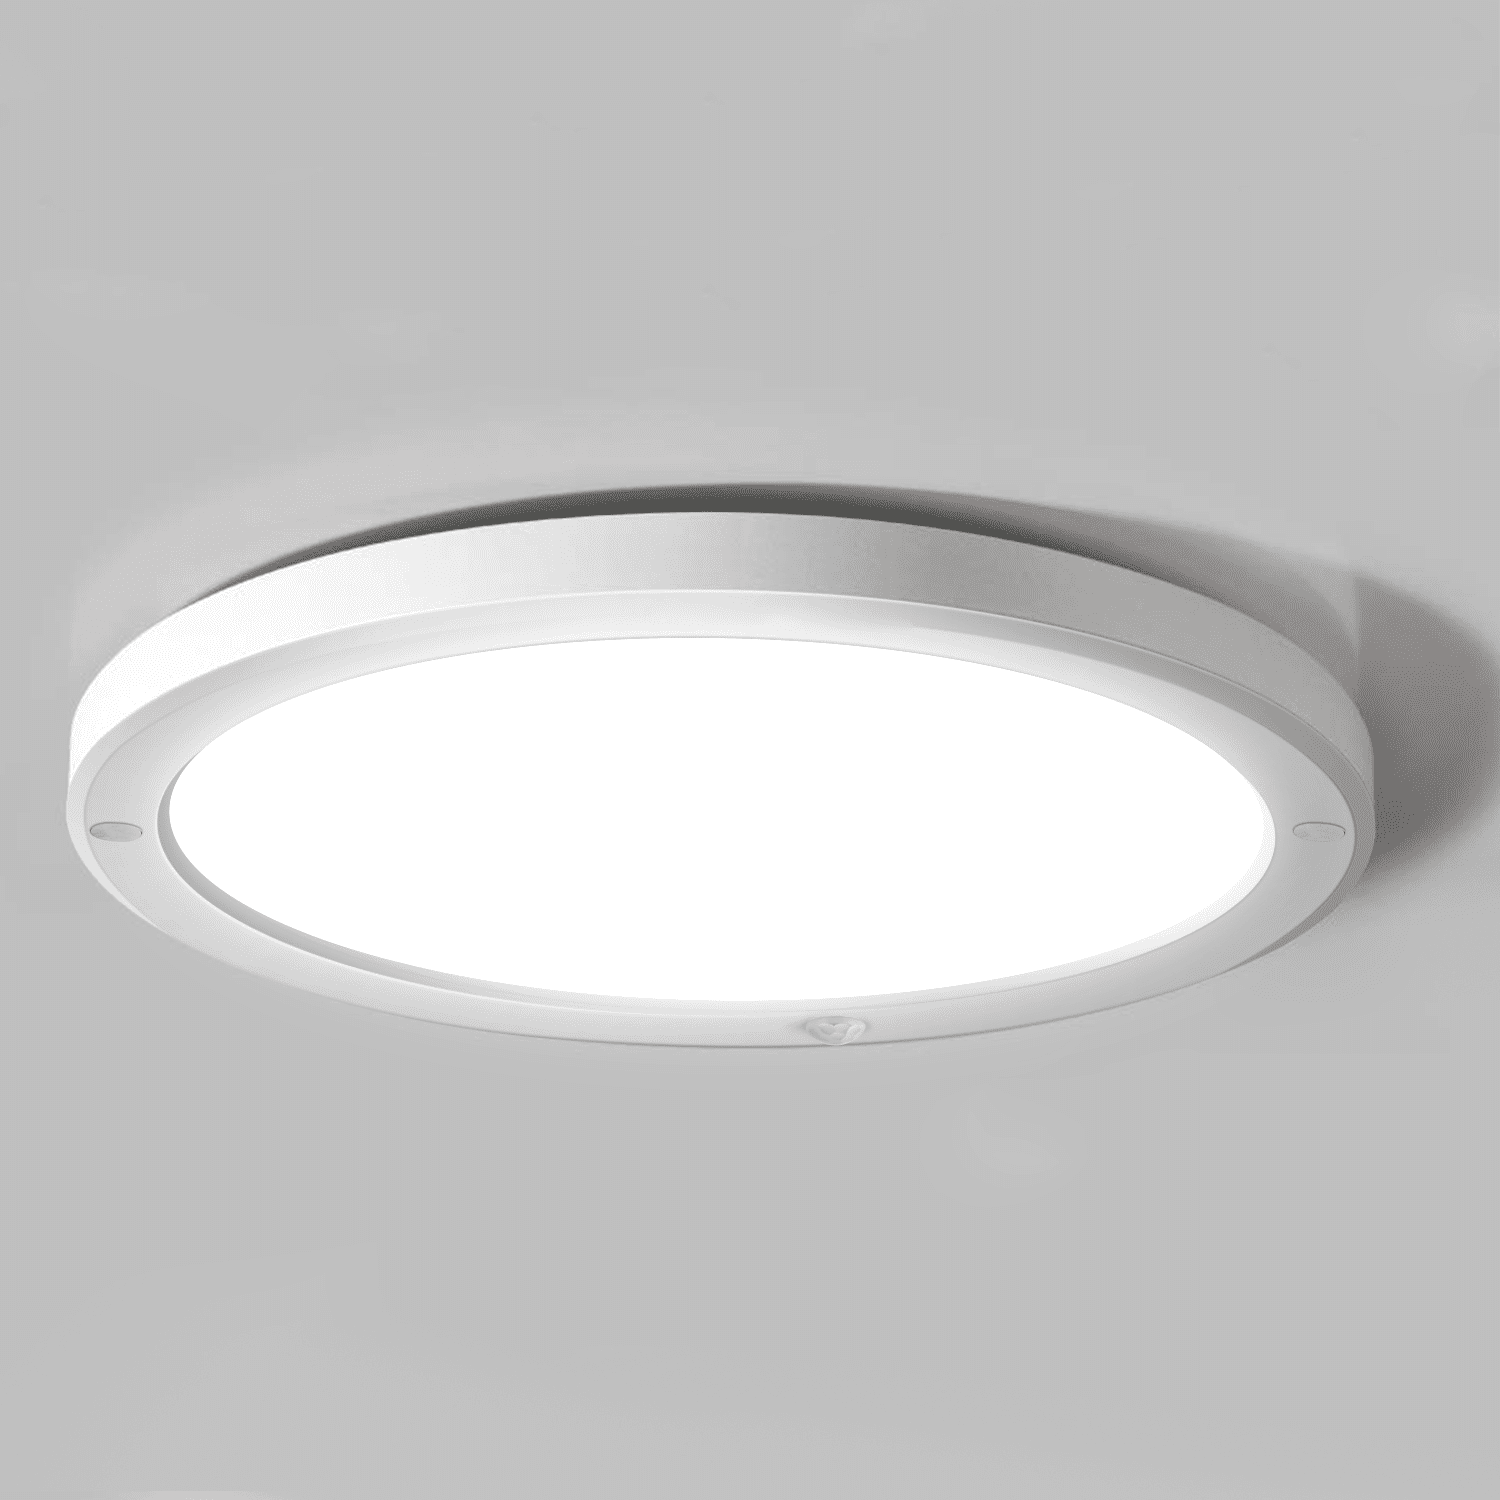 White LED Lighting Fixture with Motion Sensor 4000K 